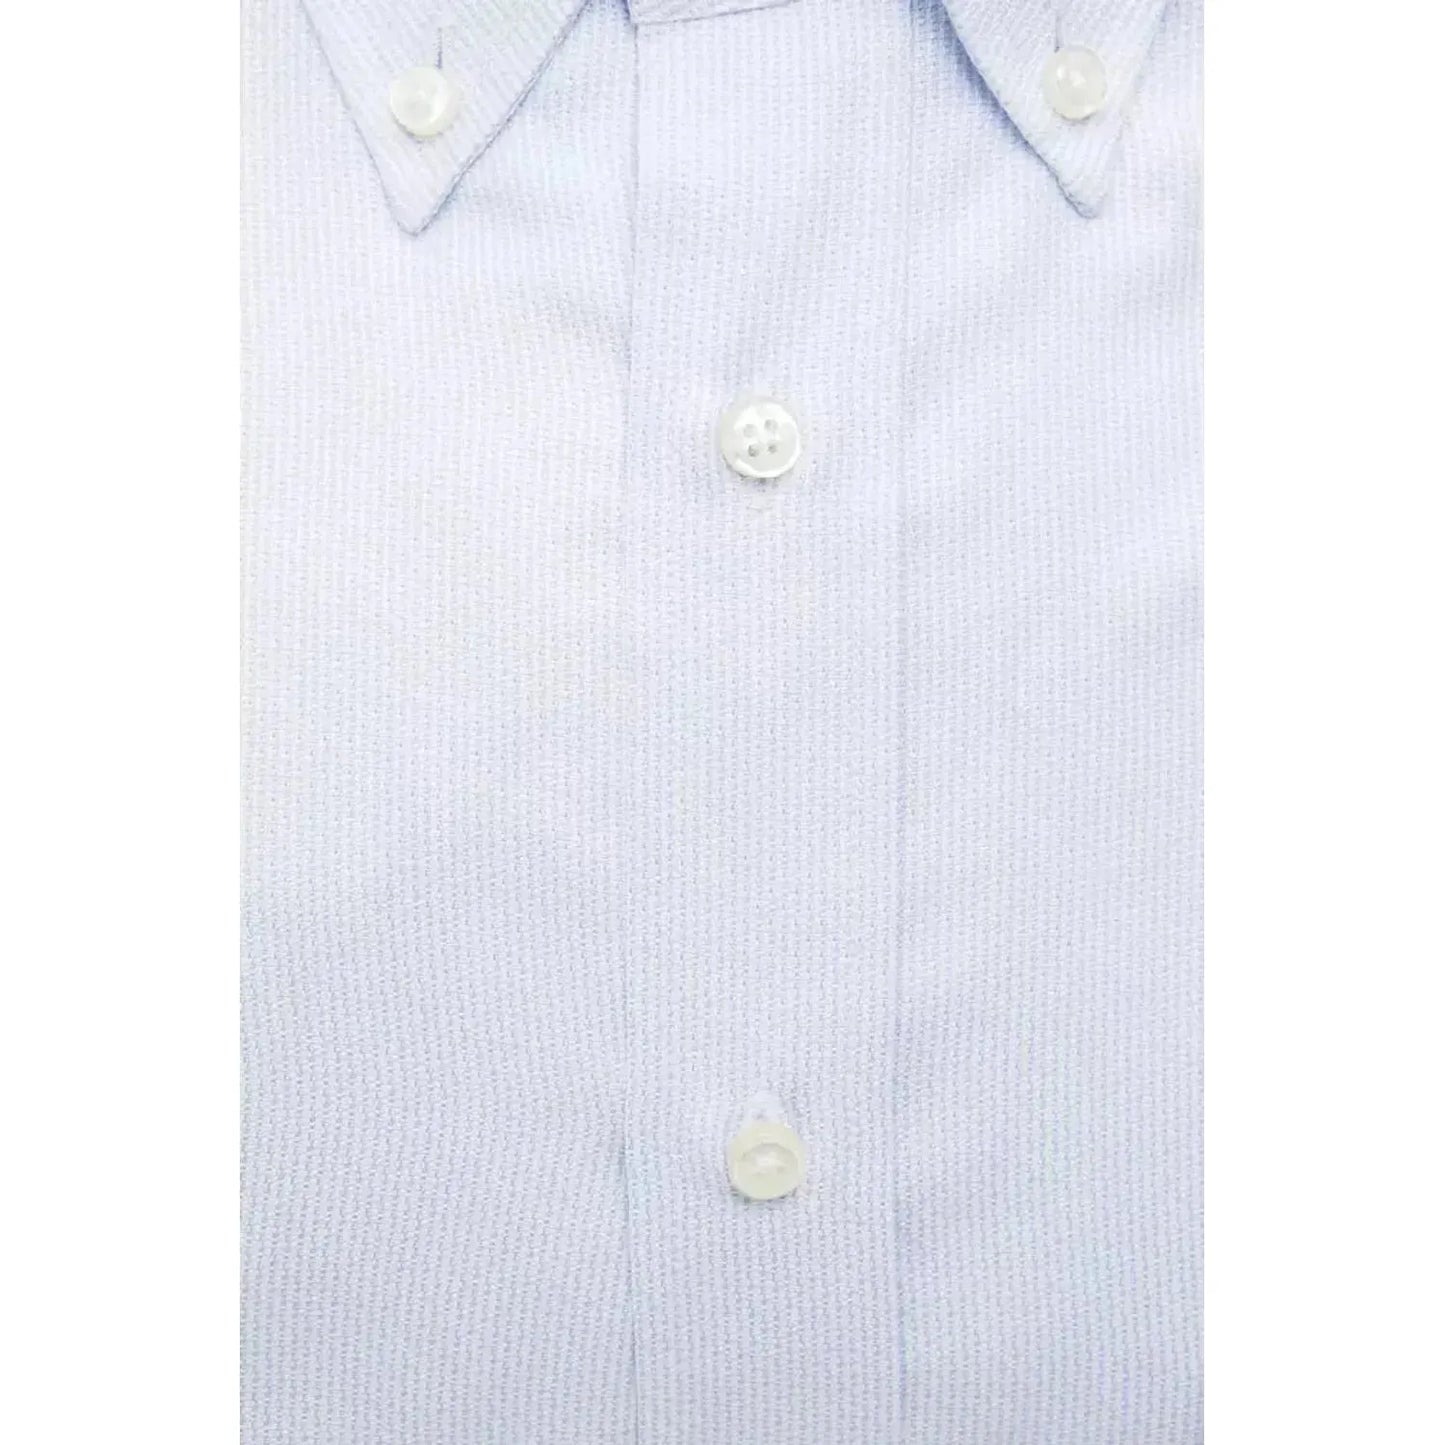 Robert Friedman Elegant Light Blue Cotton Shirt light-blue-cotton-shirt-15